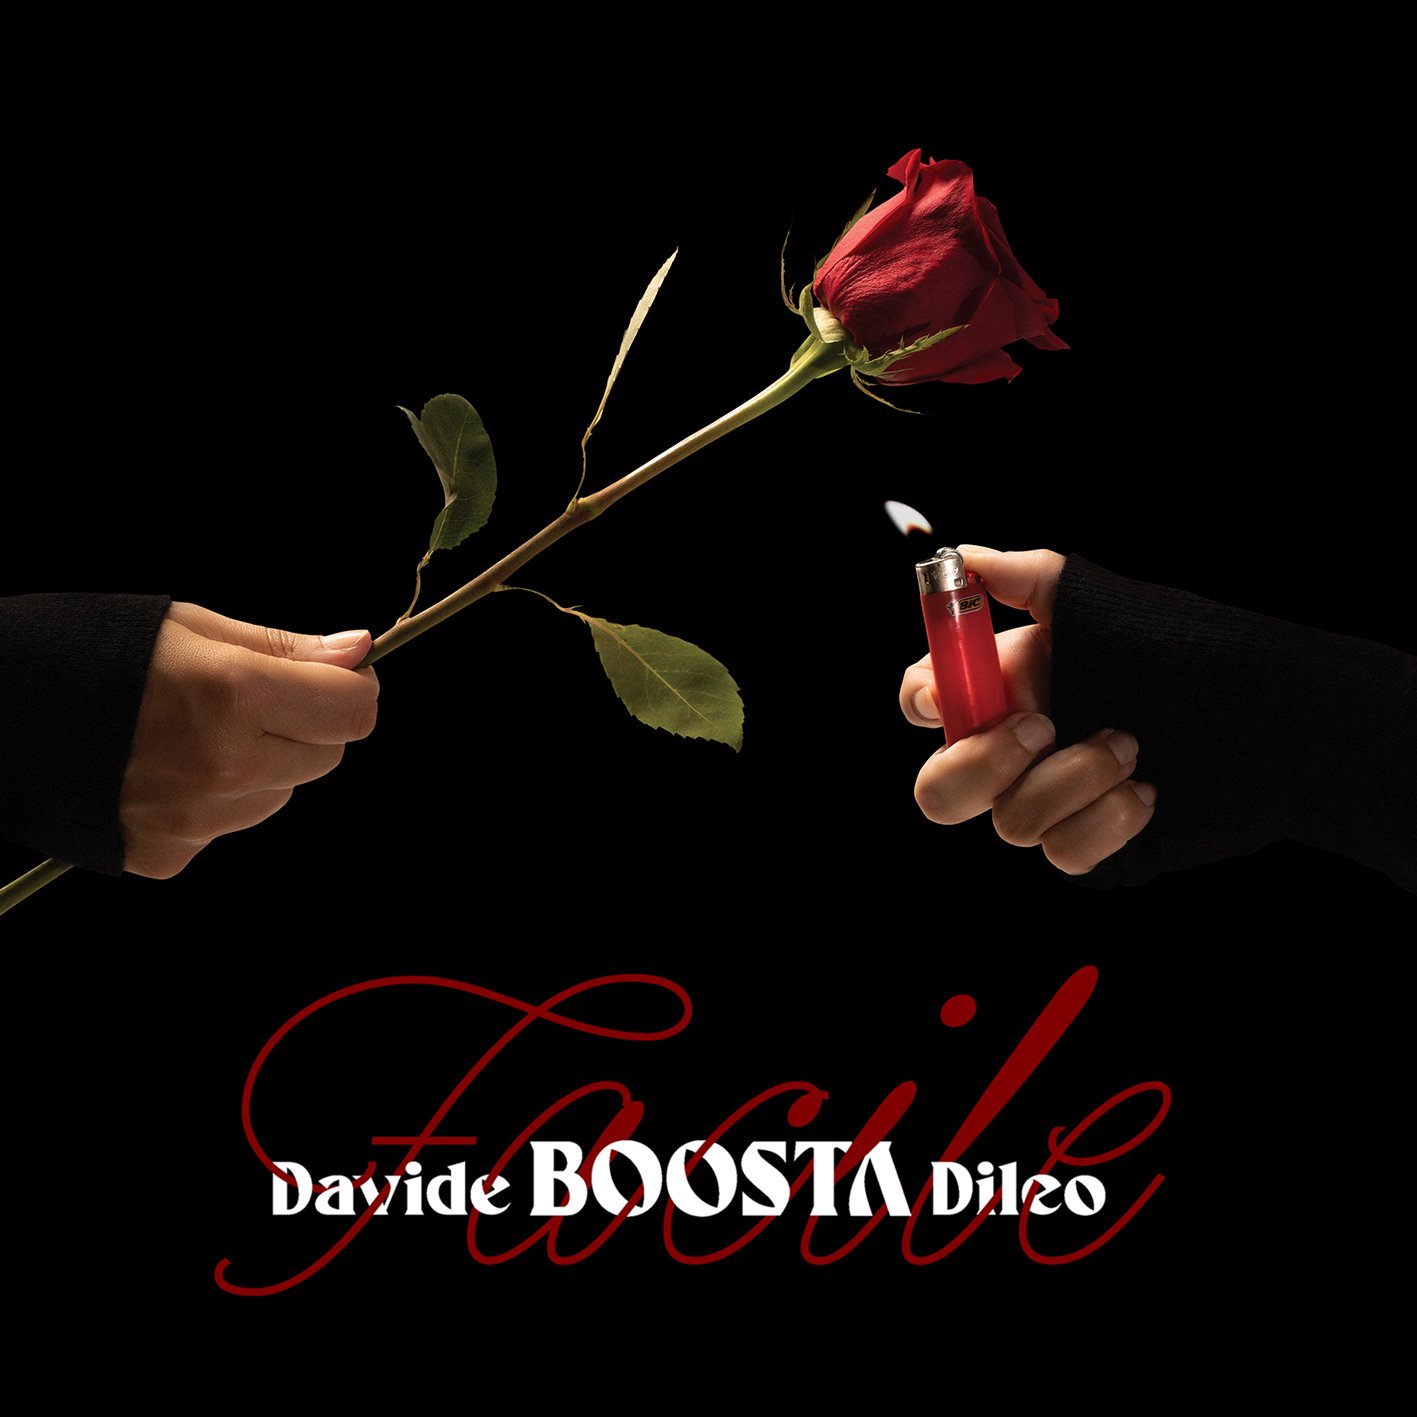 Il 30 ottobre esce “Facile”, il nuovo disco di Boosta